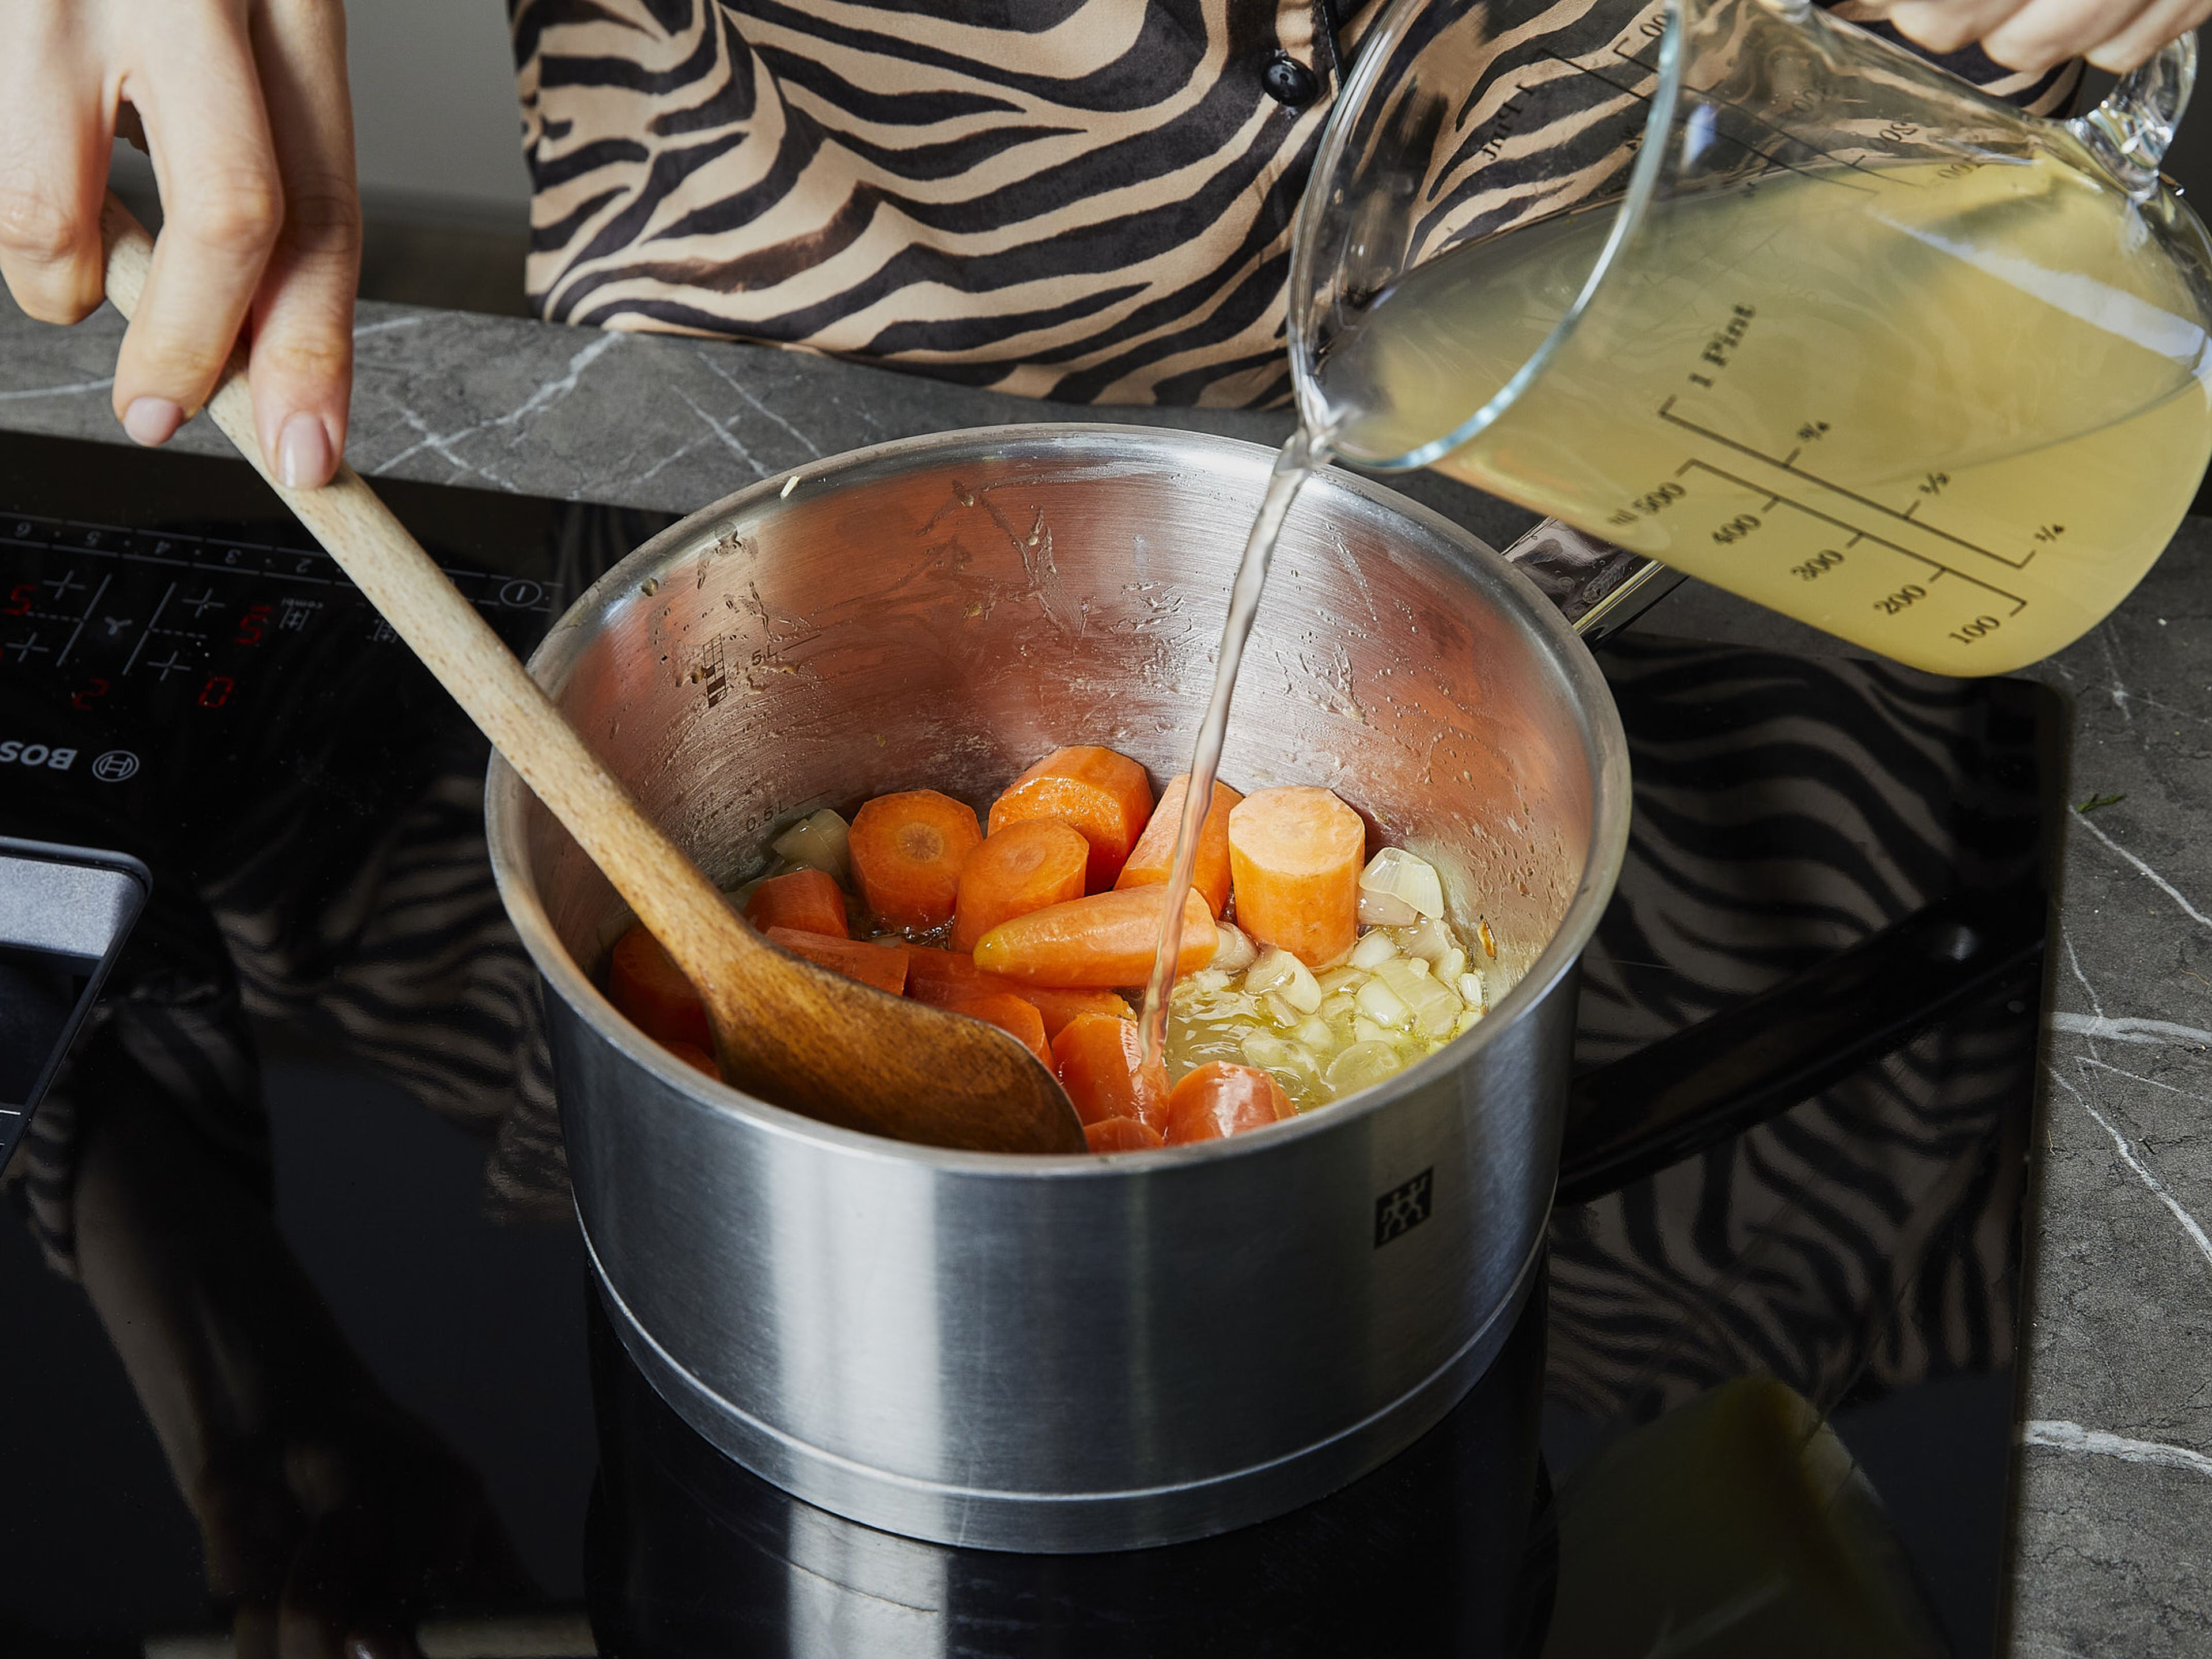 In einem mittelgroßen Topf Butter bei mittlerer Hitze schmelzen. Schalotten und ⅔ des Knoblauchs darin unter häufigem Rühren ca. 3 Min. goldgelb anbraten. Karotten zugeben, kurz anbraten, dann mit Gemüsebrühe ablöschen. Zum Kochen bringen, dann den Topf abdecken, die Hitze reduzieren und ca. 10 Min. köcheln lassen, bis die Karotten gabelzart sind. In der Zwischenzeit die Nudeln in das kochende Wasser geben und nach Packungsanweisung bissfest kochen. Etwa 250 ml/1 Tasse des Nudelwassers aufbewahren, bevor die Nudeln abgegossen werden, und die Nudeln anschließend wieder in den großen Topf geben.